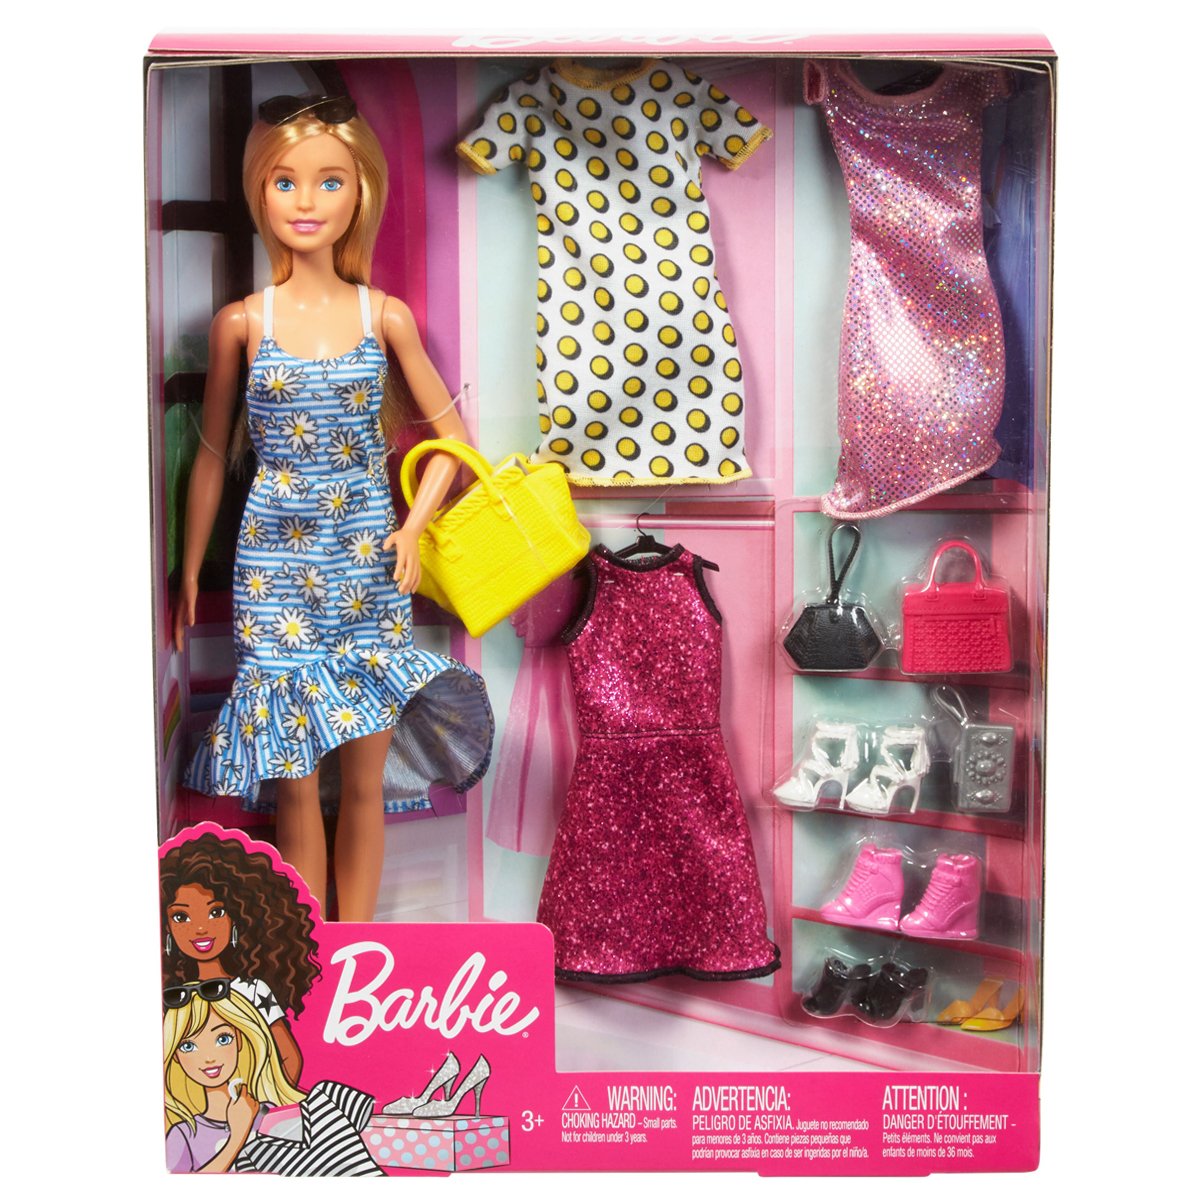 GDJ40 Barbie'nin Kıyafet Kombinleri Oyun Seti